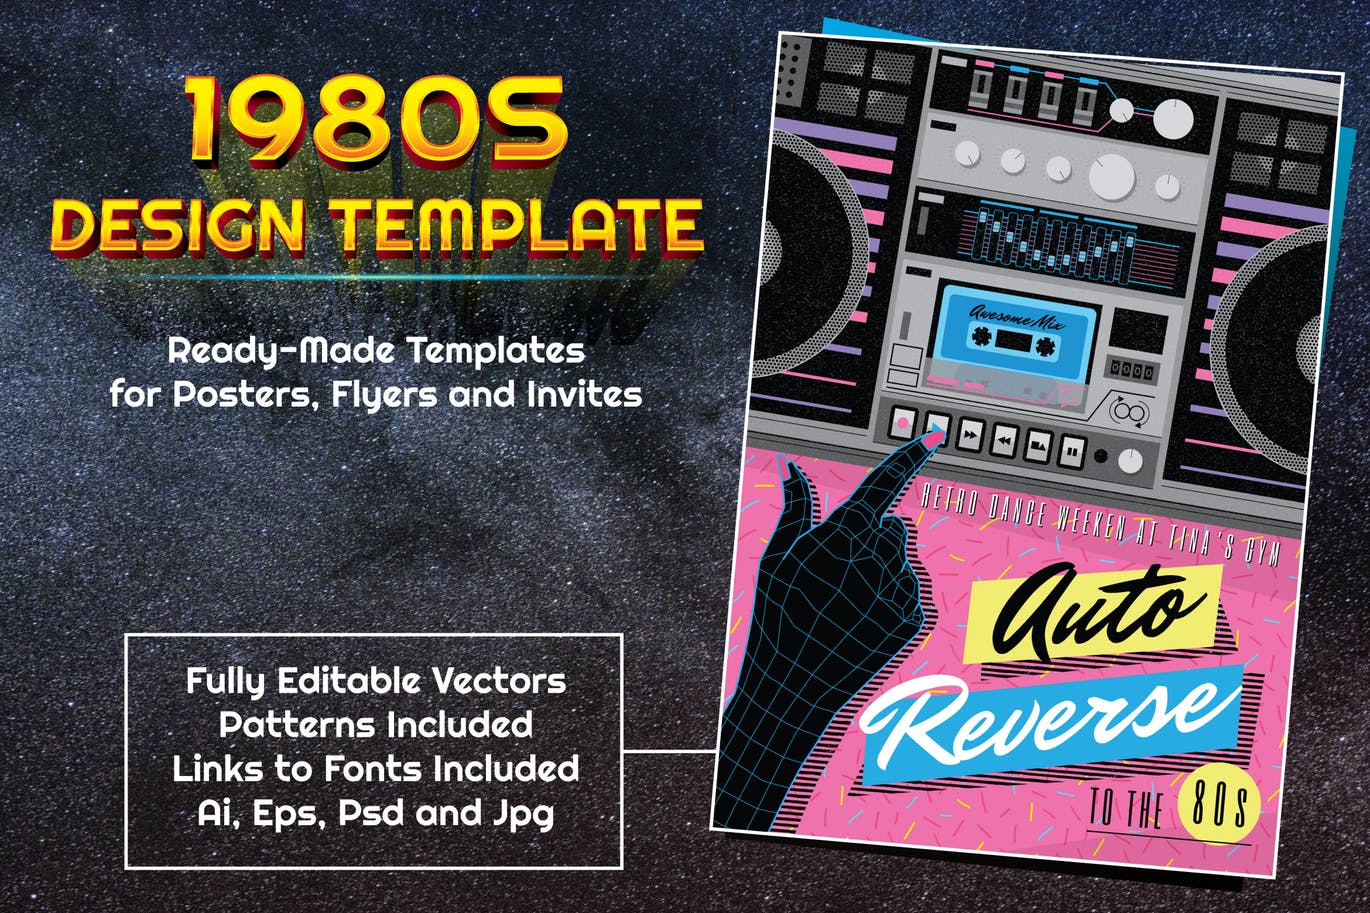 1980s复古设计风格音乐主题设计素材包 1980s Music Themed Design Template插图